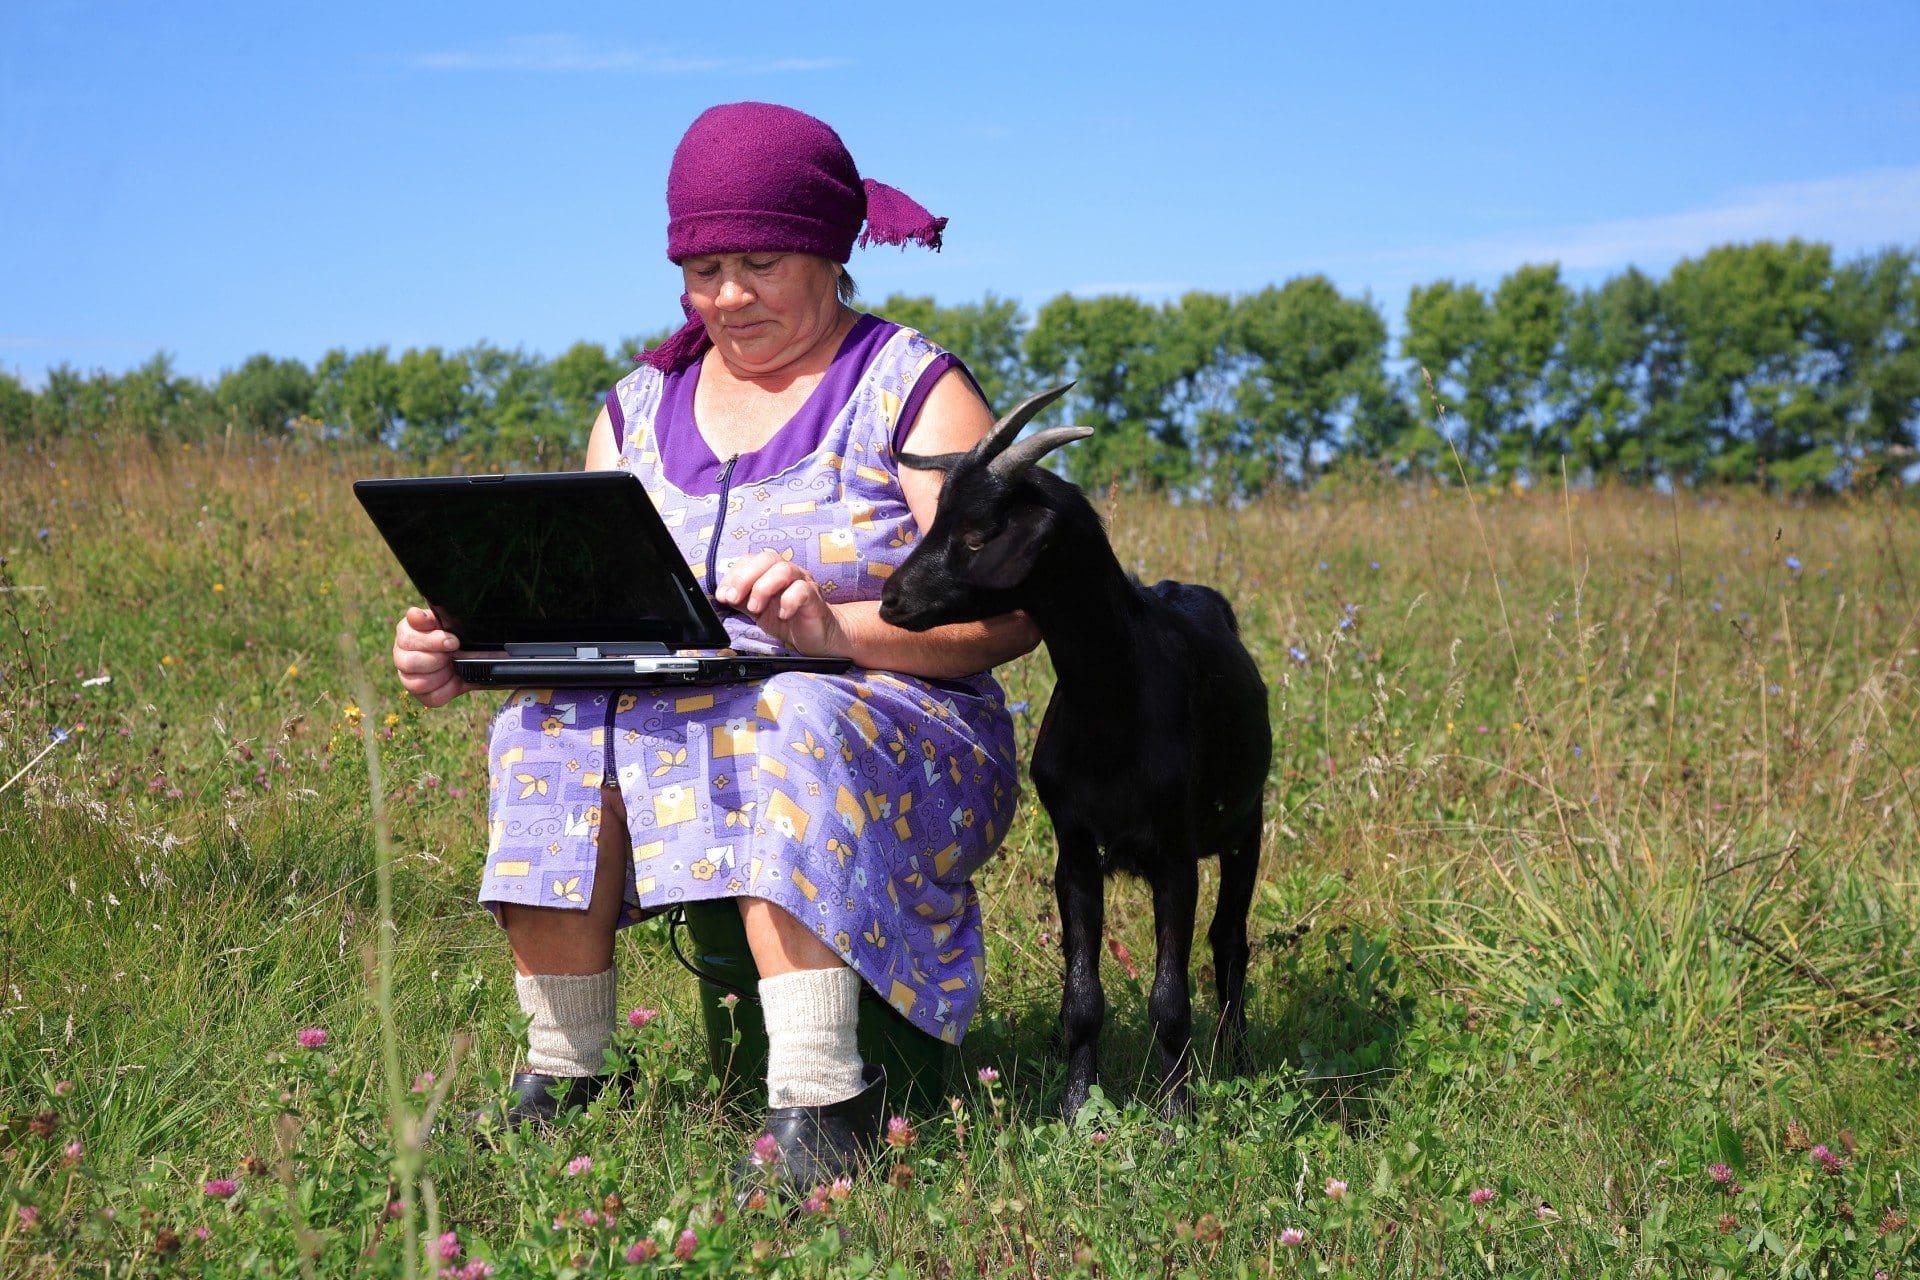 Сегодня интернет ловит. Интернет в сельской местности. Бабушка с козой в деревне. Интернет в селе. Бабушка в деревне за компьютером.